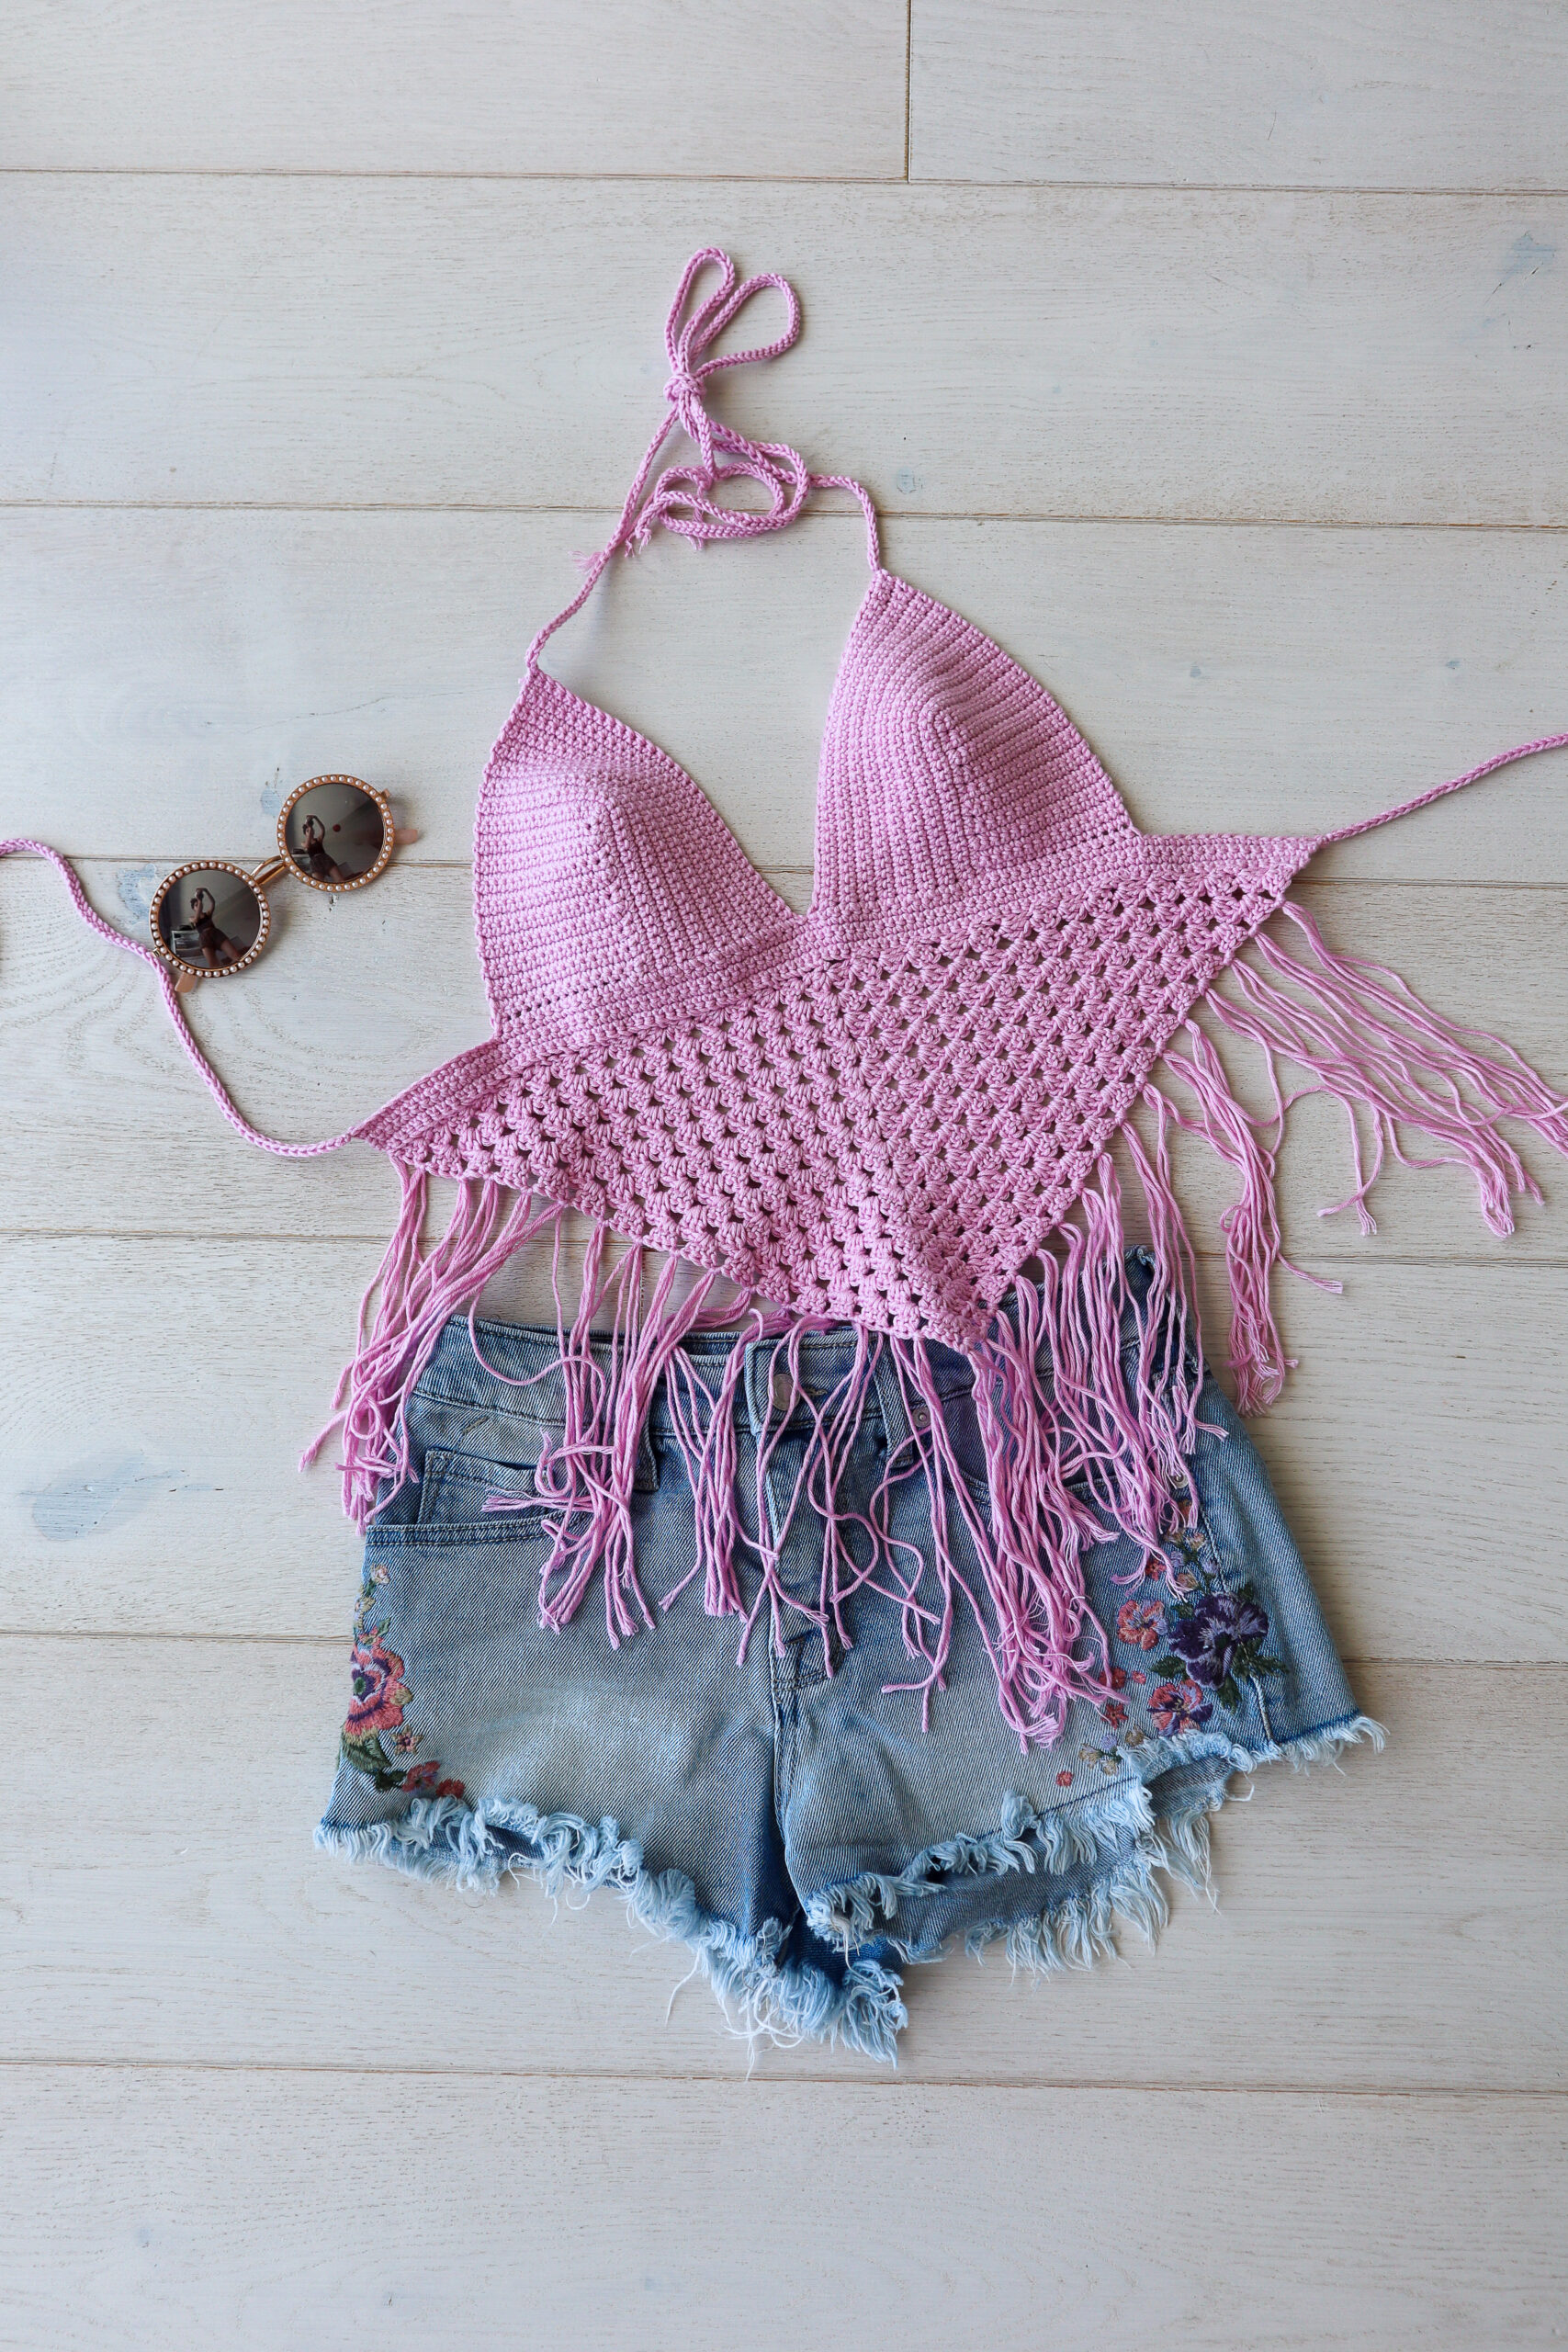 Crochella Crochet Top – Crocheted Bralette Pattern – The Snugglery